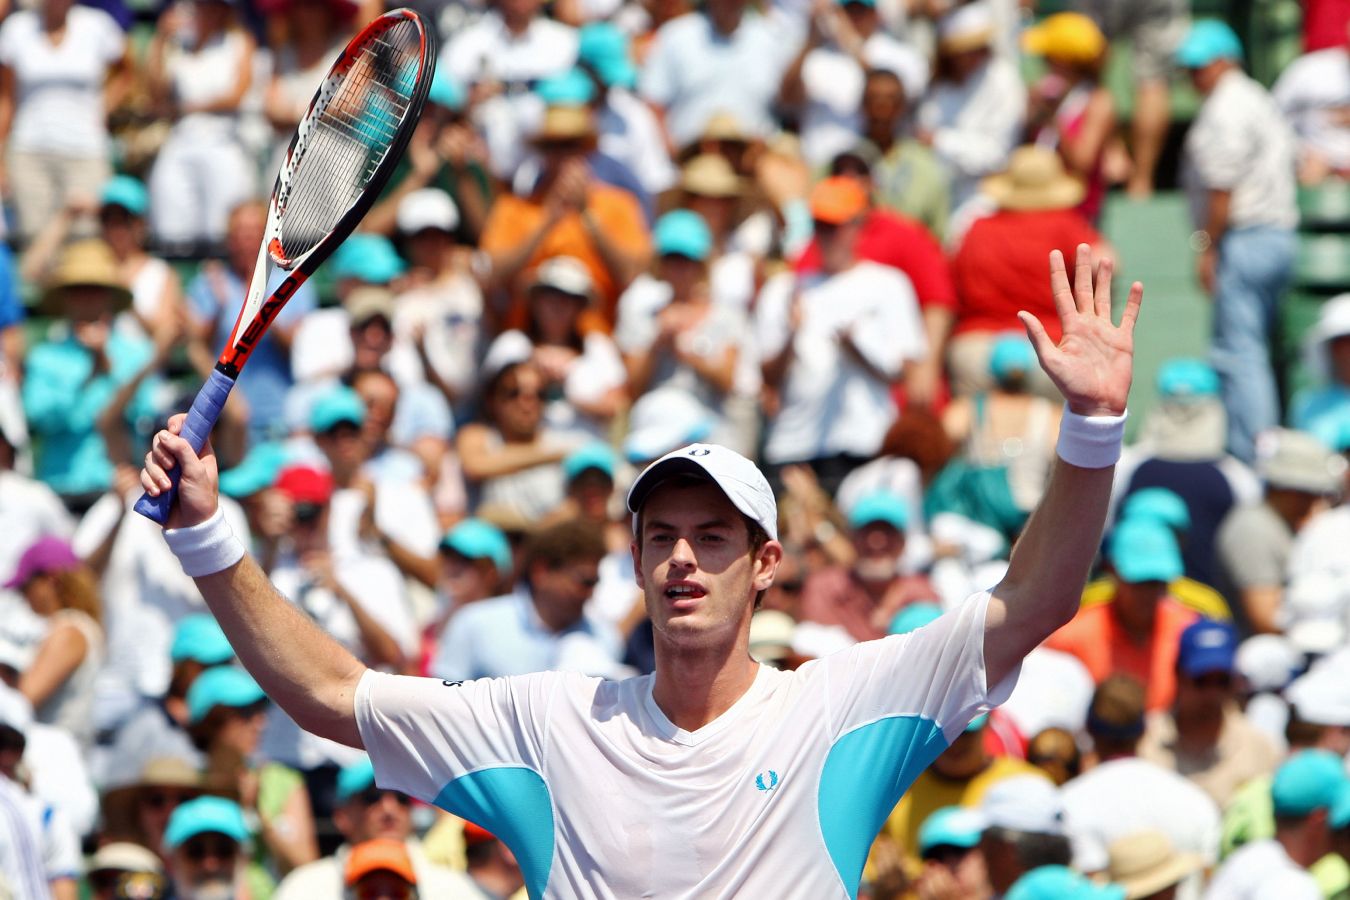 Турниры «Мастерс» в Индиан-Уэллсе и Майами: какие теннисисты побеждали, Федерер, Надаль, Джокович, Давыденко, рейтинг